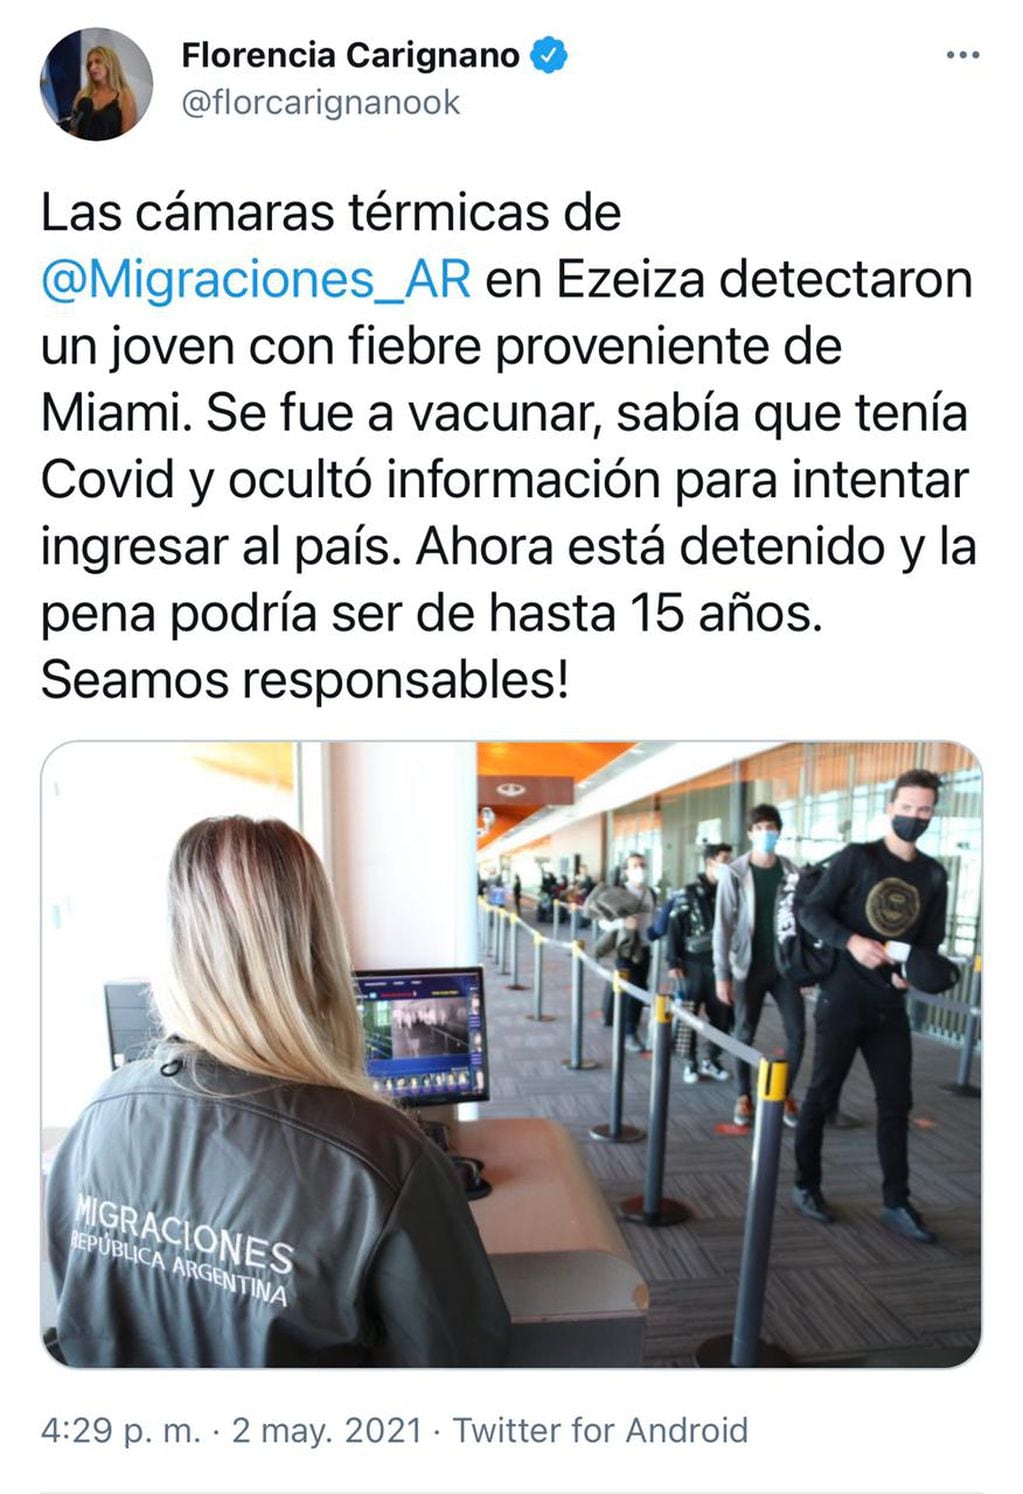 Viajó a Miami a vacunarse, voló con fiebre y quedó detenido por ocultar PCR positivo (Foto: Migraciones)